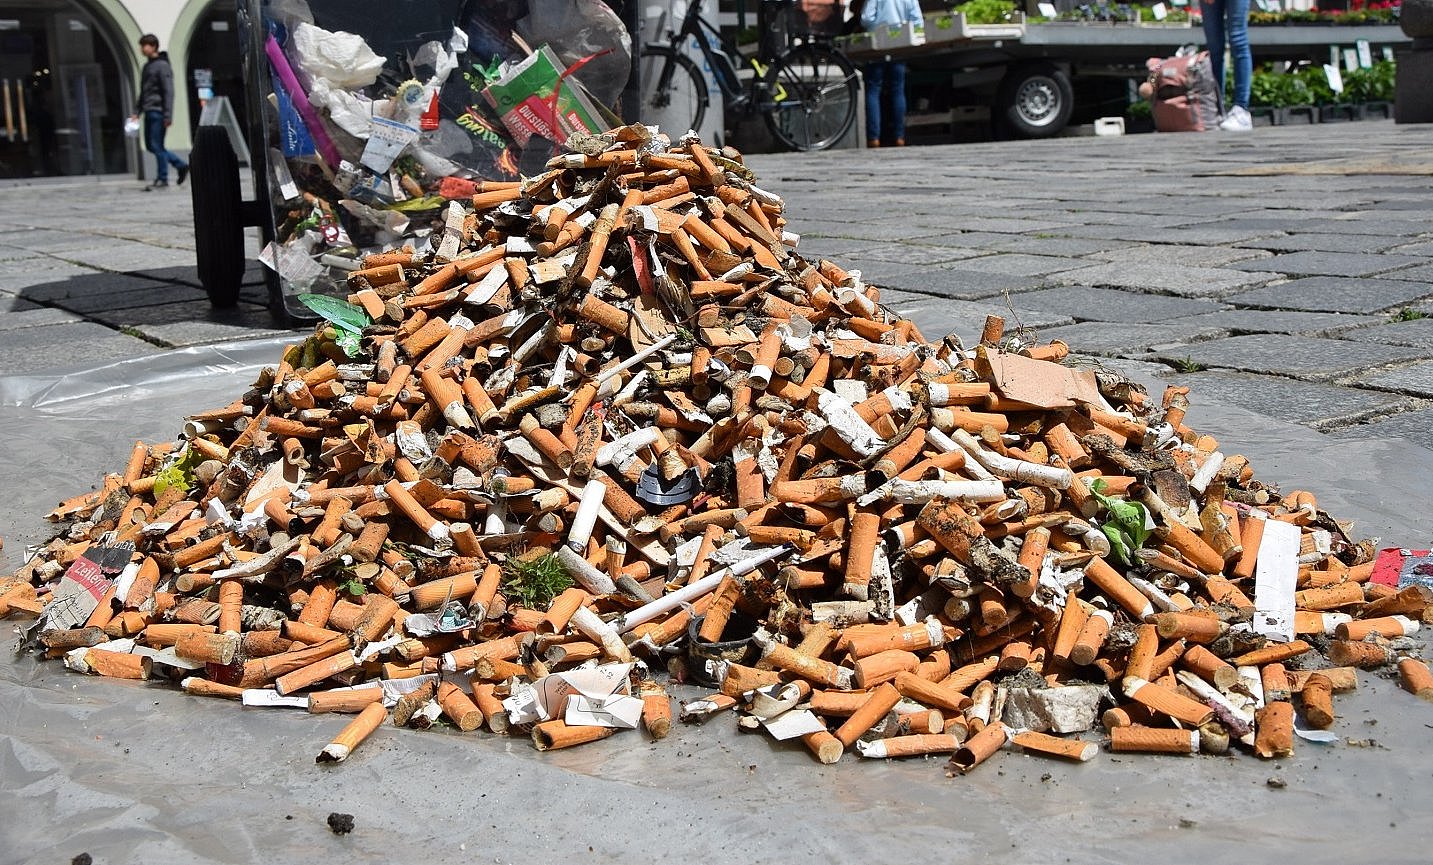 Ein aus Zigarettenstummeln bestehender Haufen, der vom Straubinger Stadtplatz stammt